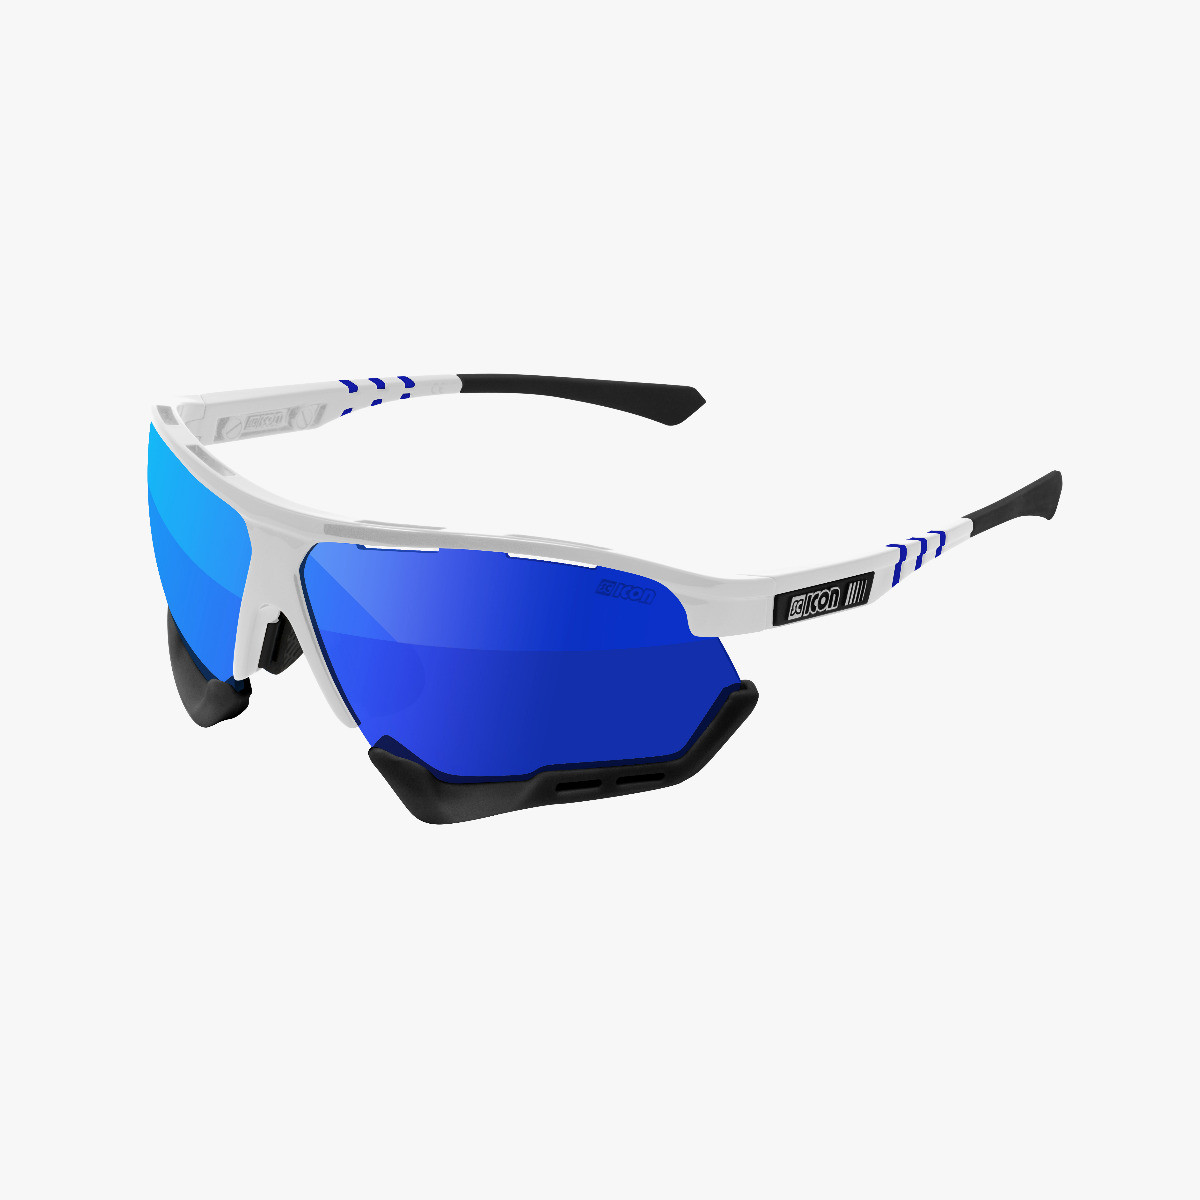 Aerocomfort performance sunglasses scnpp white frame blue lenses EY19030402
